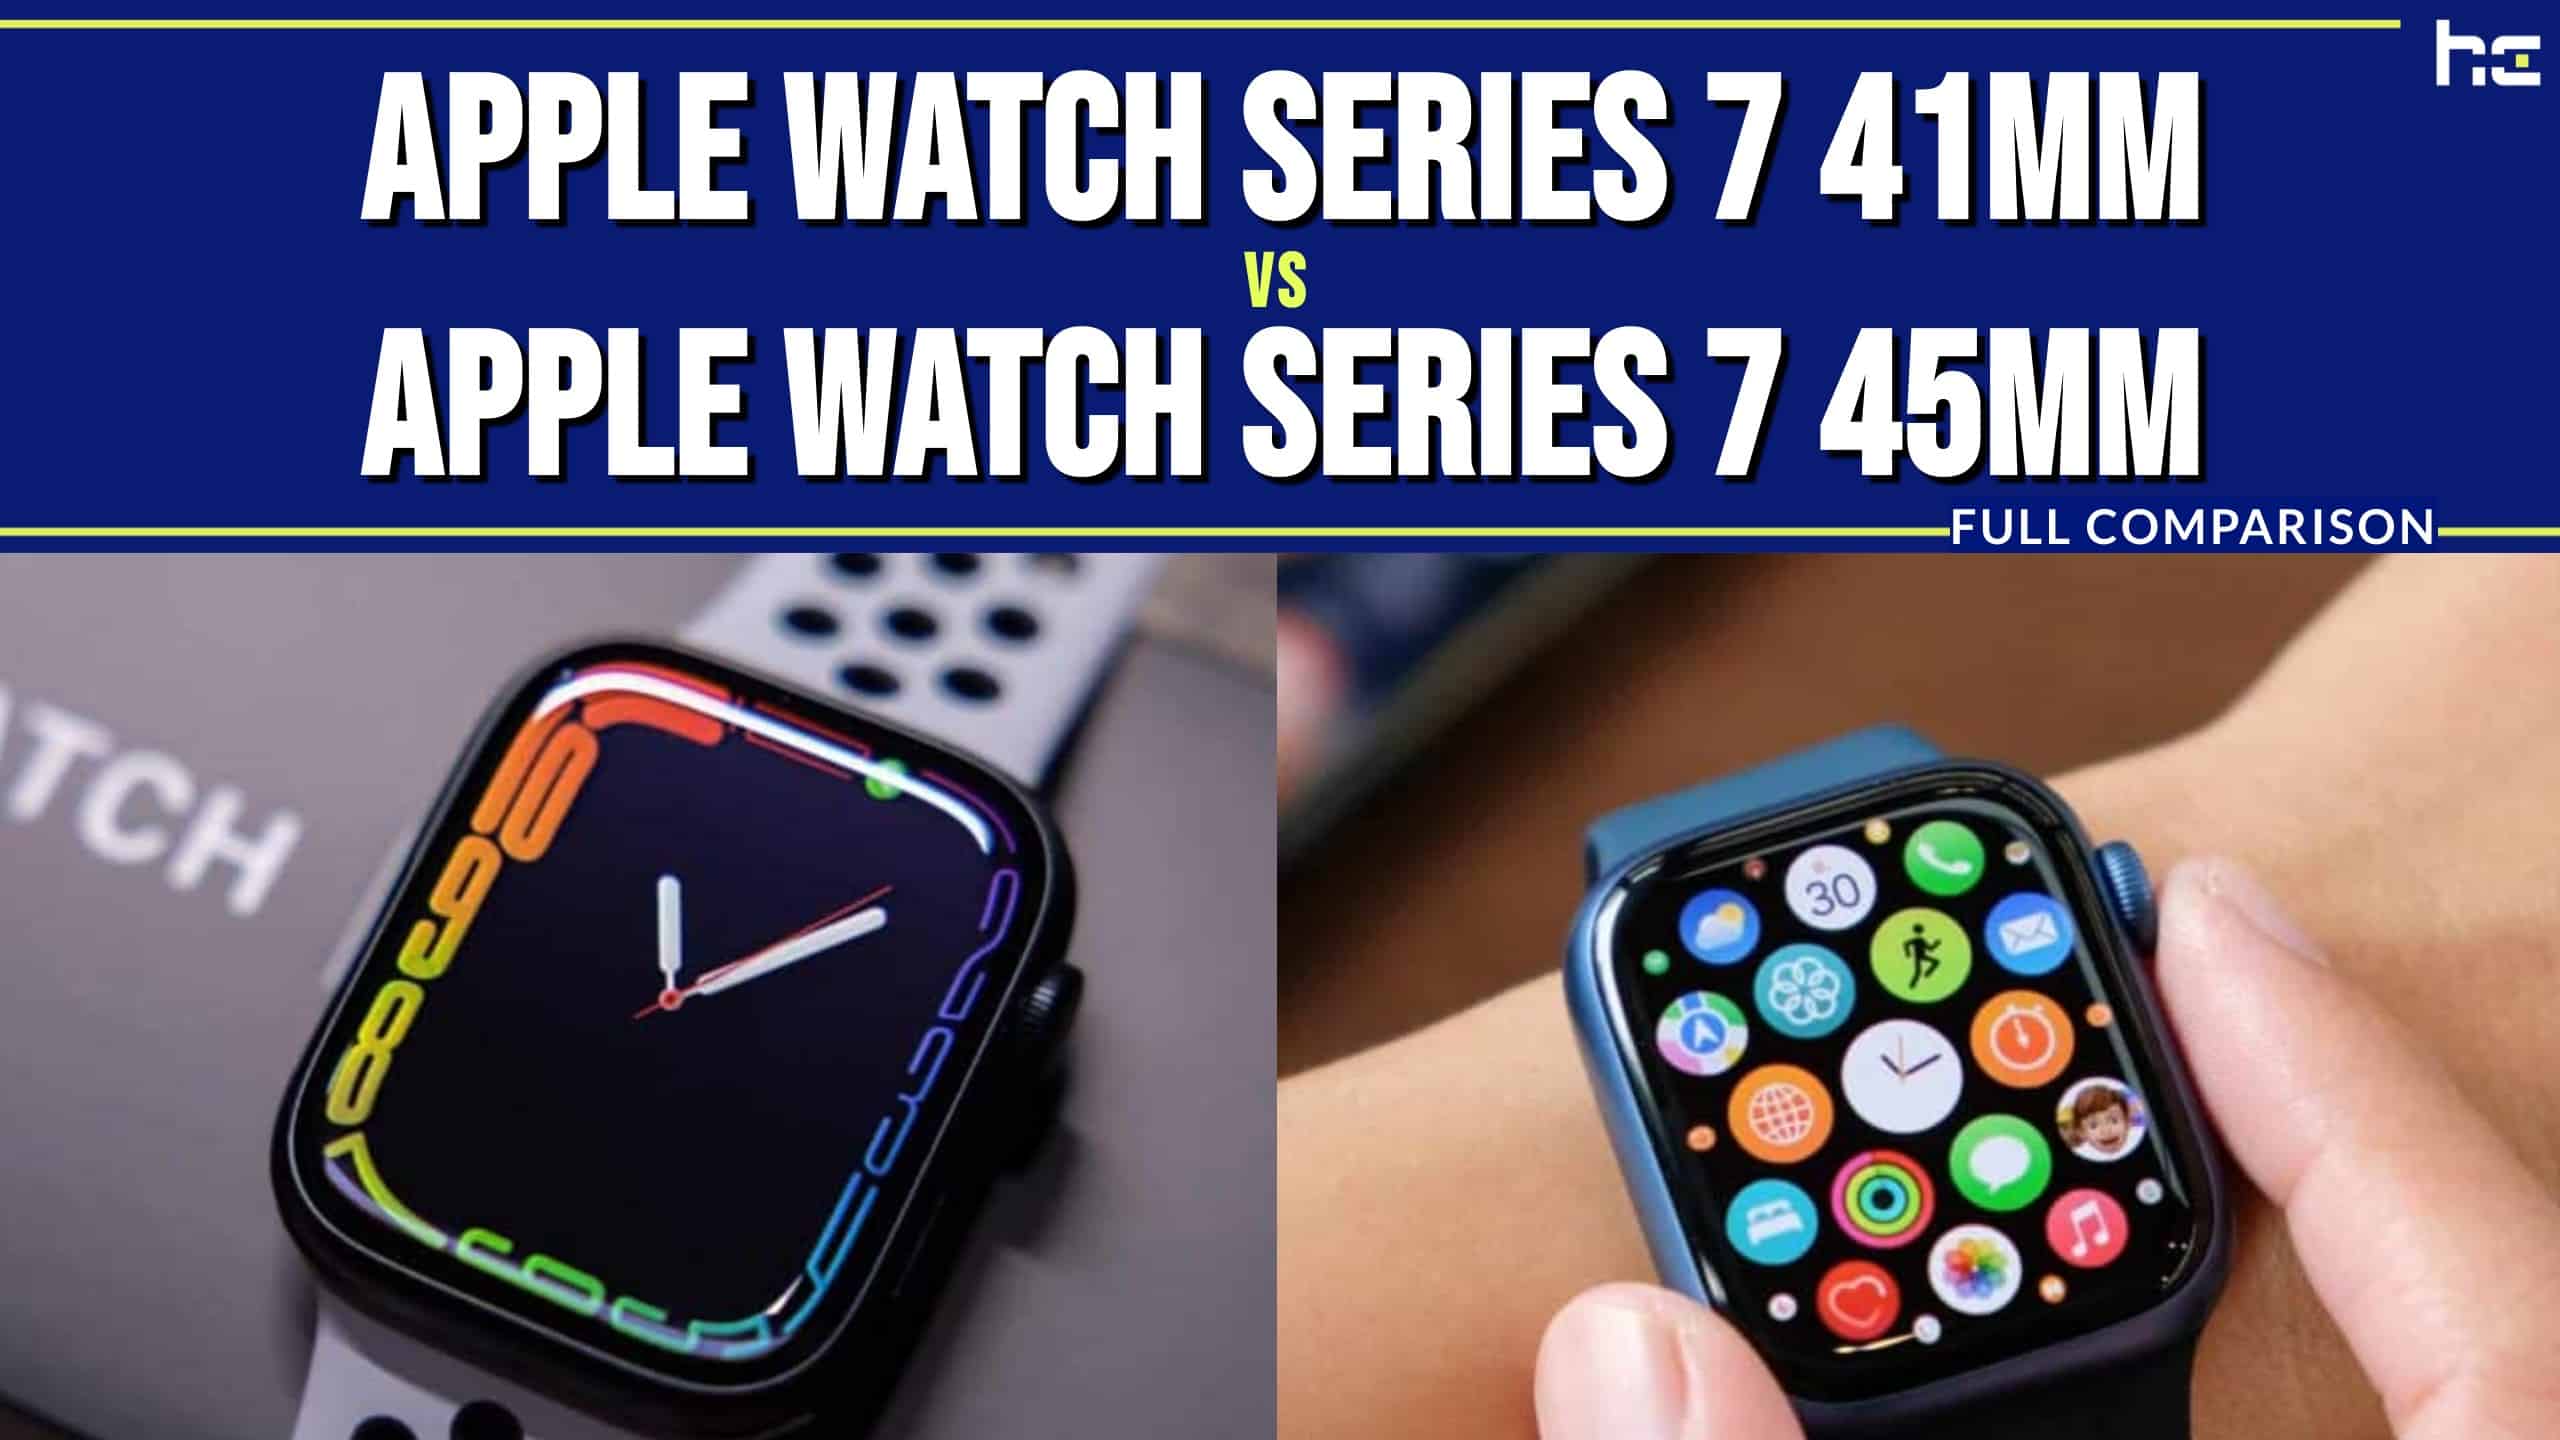 Apple Watch Series 7 41mm vs Apple Watch Series 7 45mm